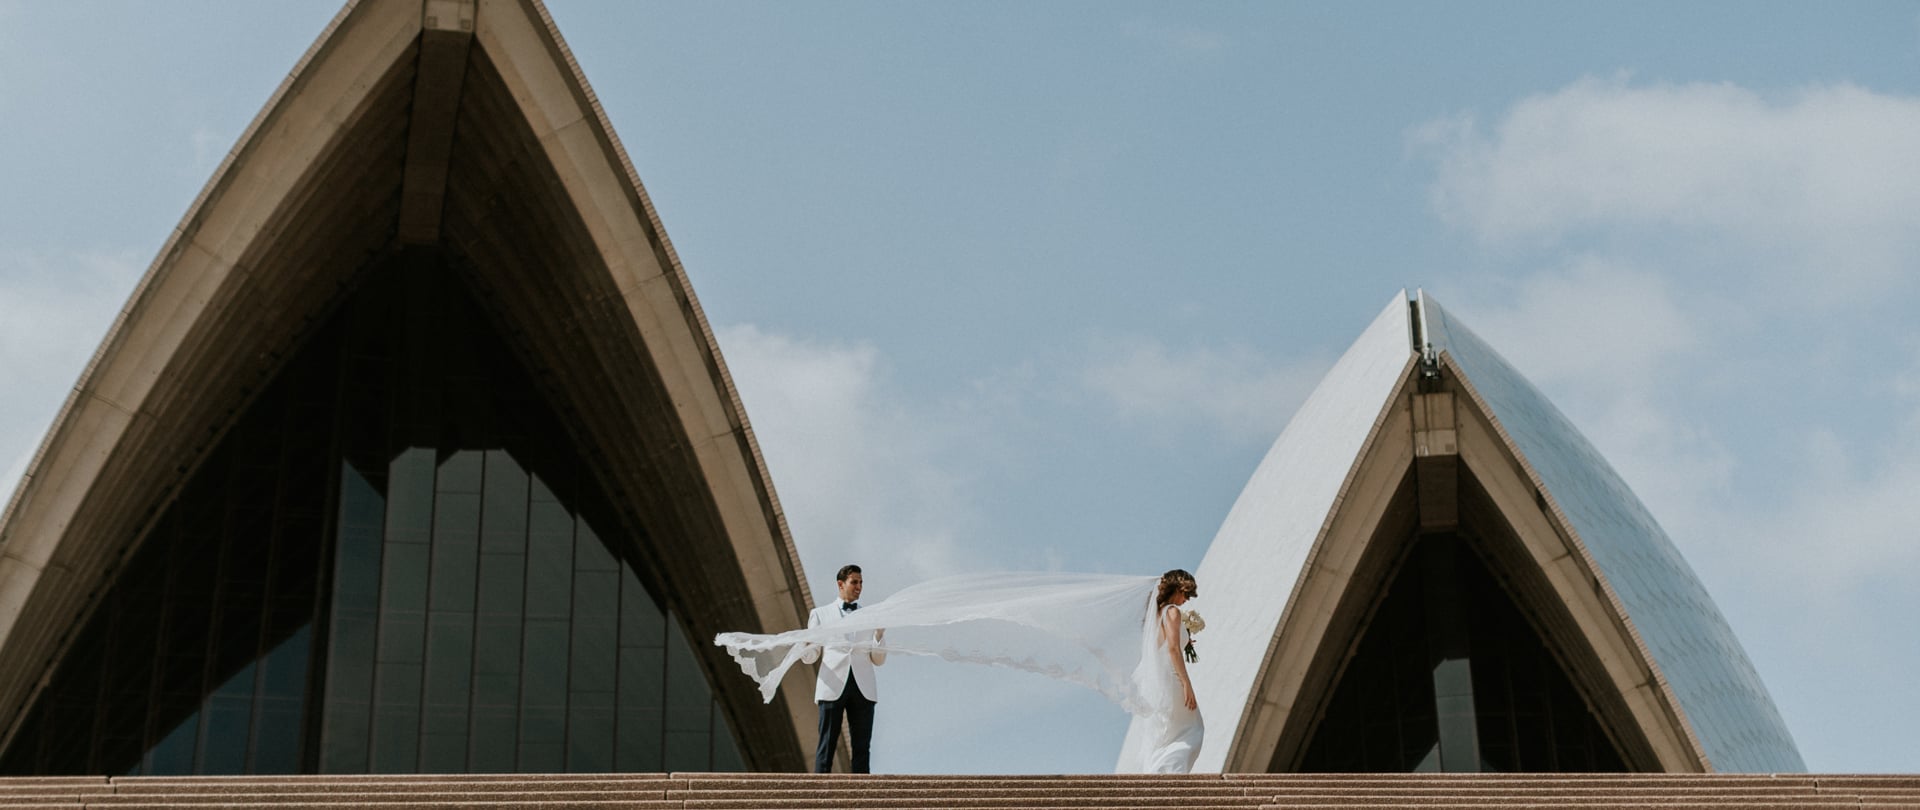 Carla & John Wedding Video Filmed at Sydney, New South Wales